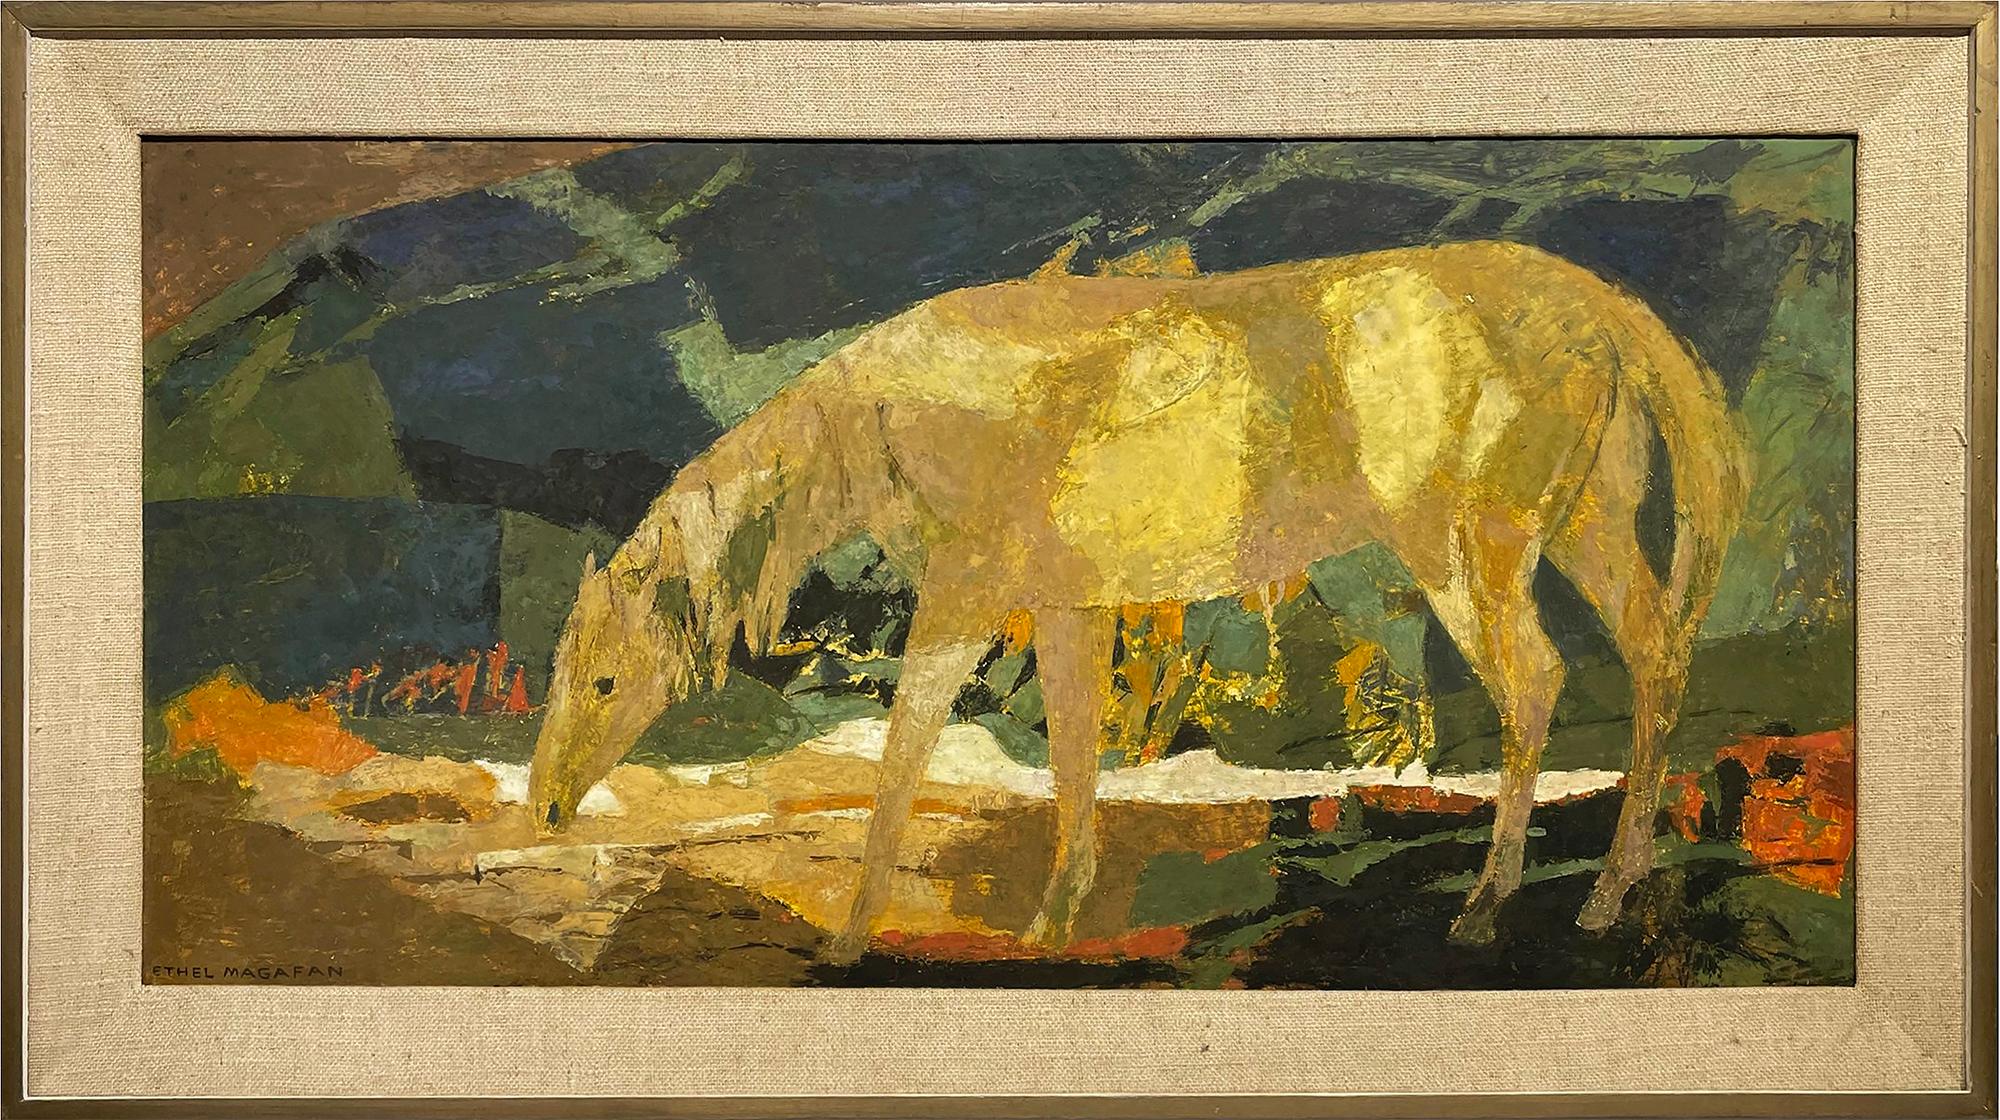 Einsames Pferd in abstrakter Landschaft – Painting von Ethel Magafan